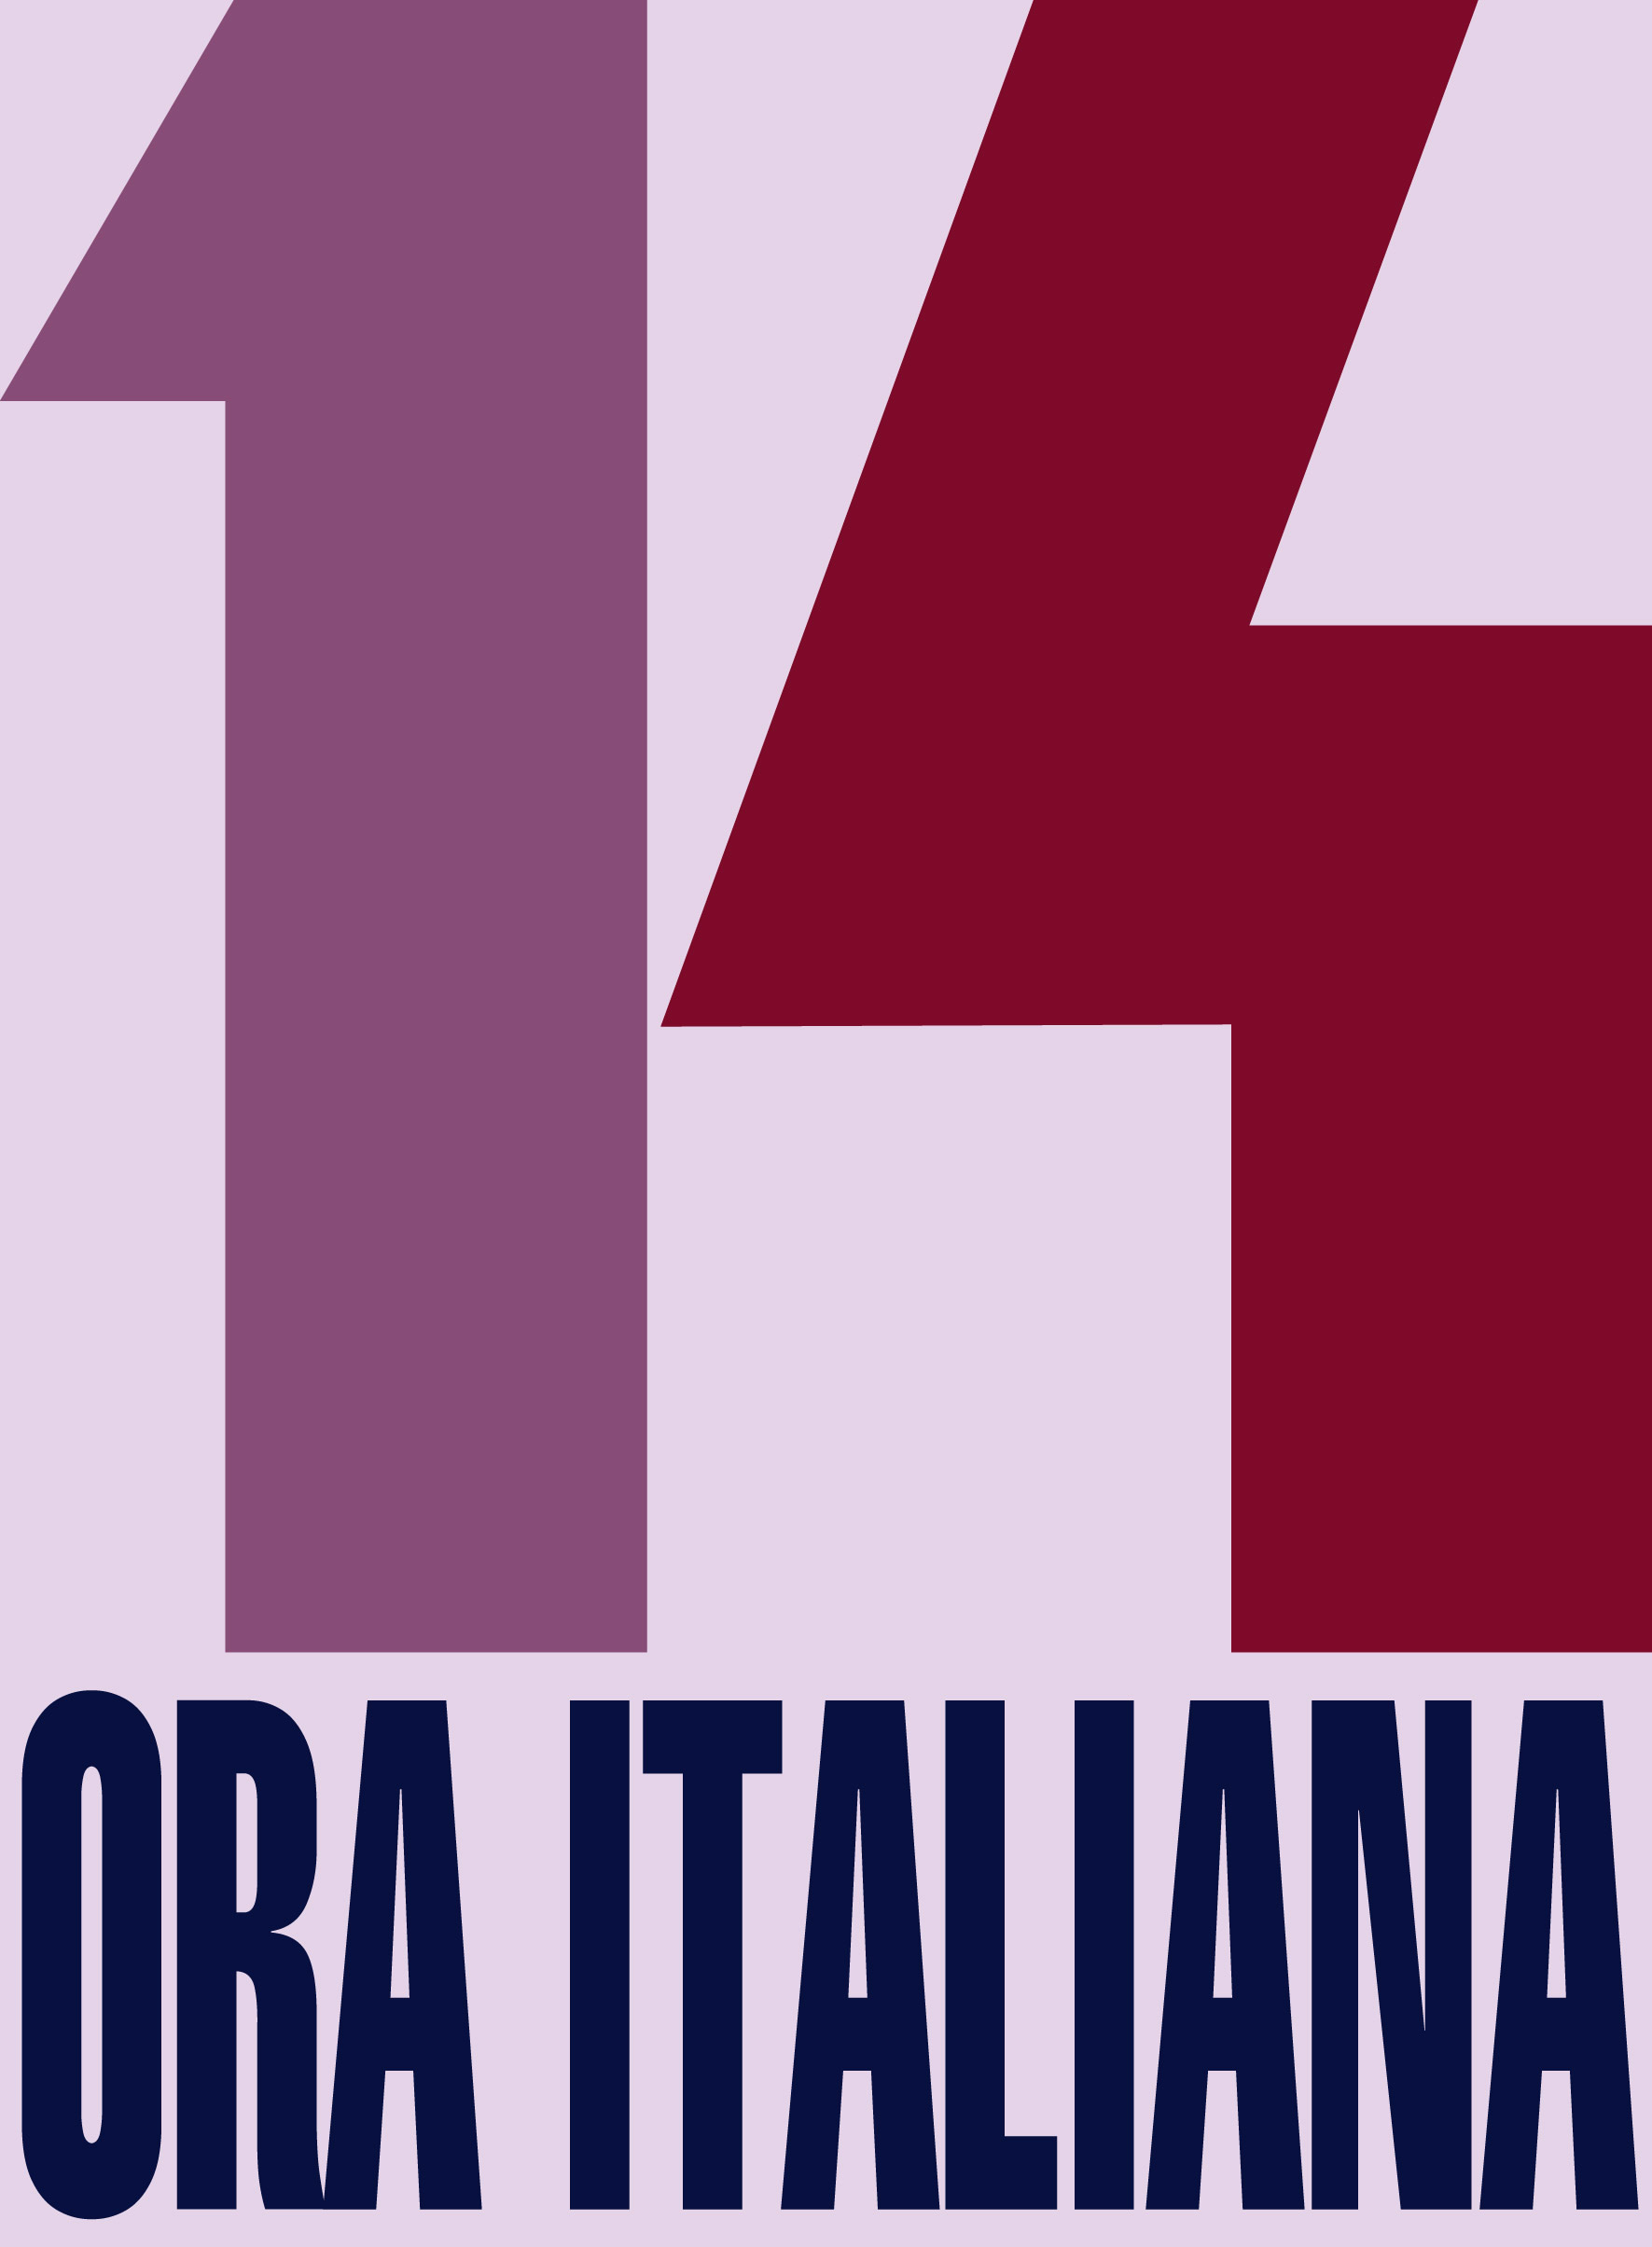 14ora italiana logo